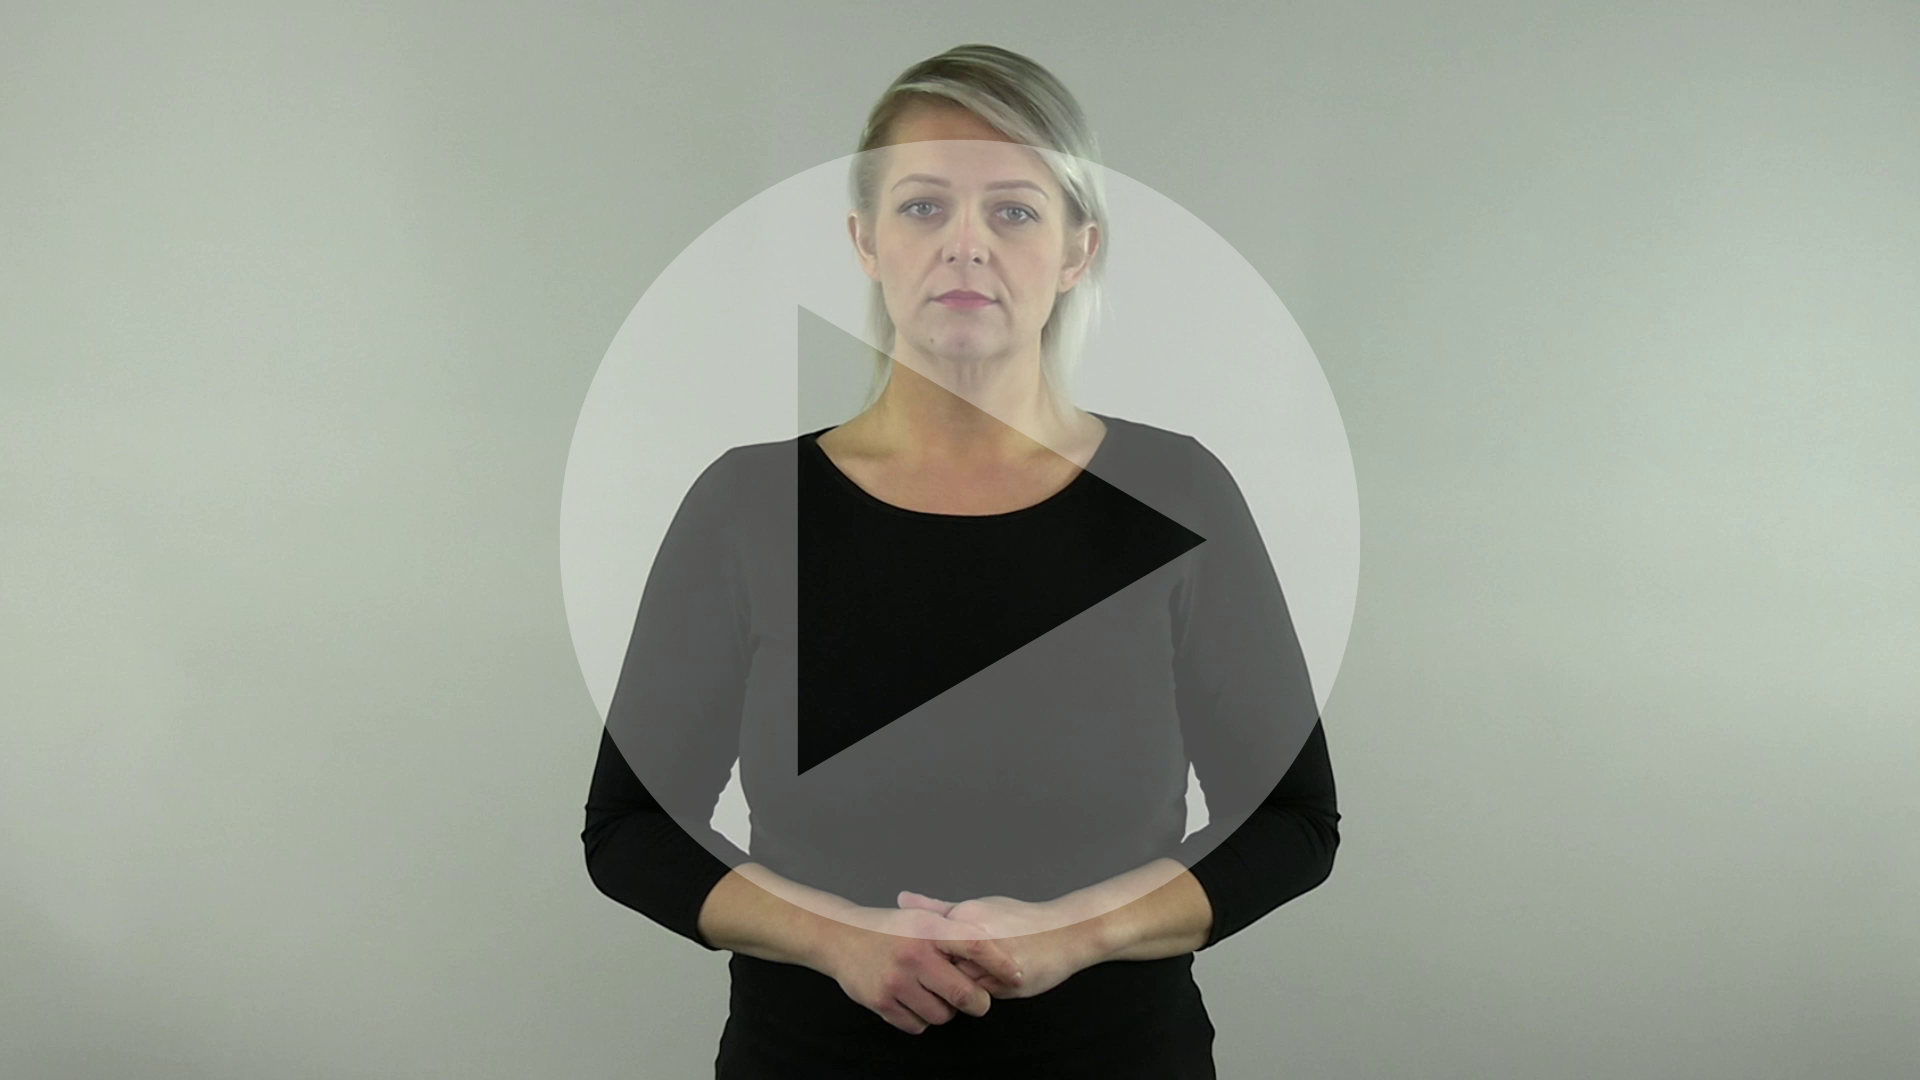 Kadr z nagrania przedstawiający tłumaczkę języka migowego z naniesionym symbolem odtwarzania wideo - trójkątem w kole